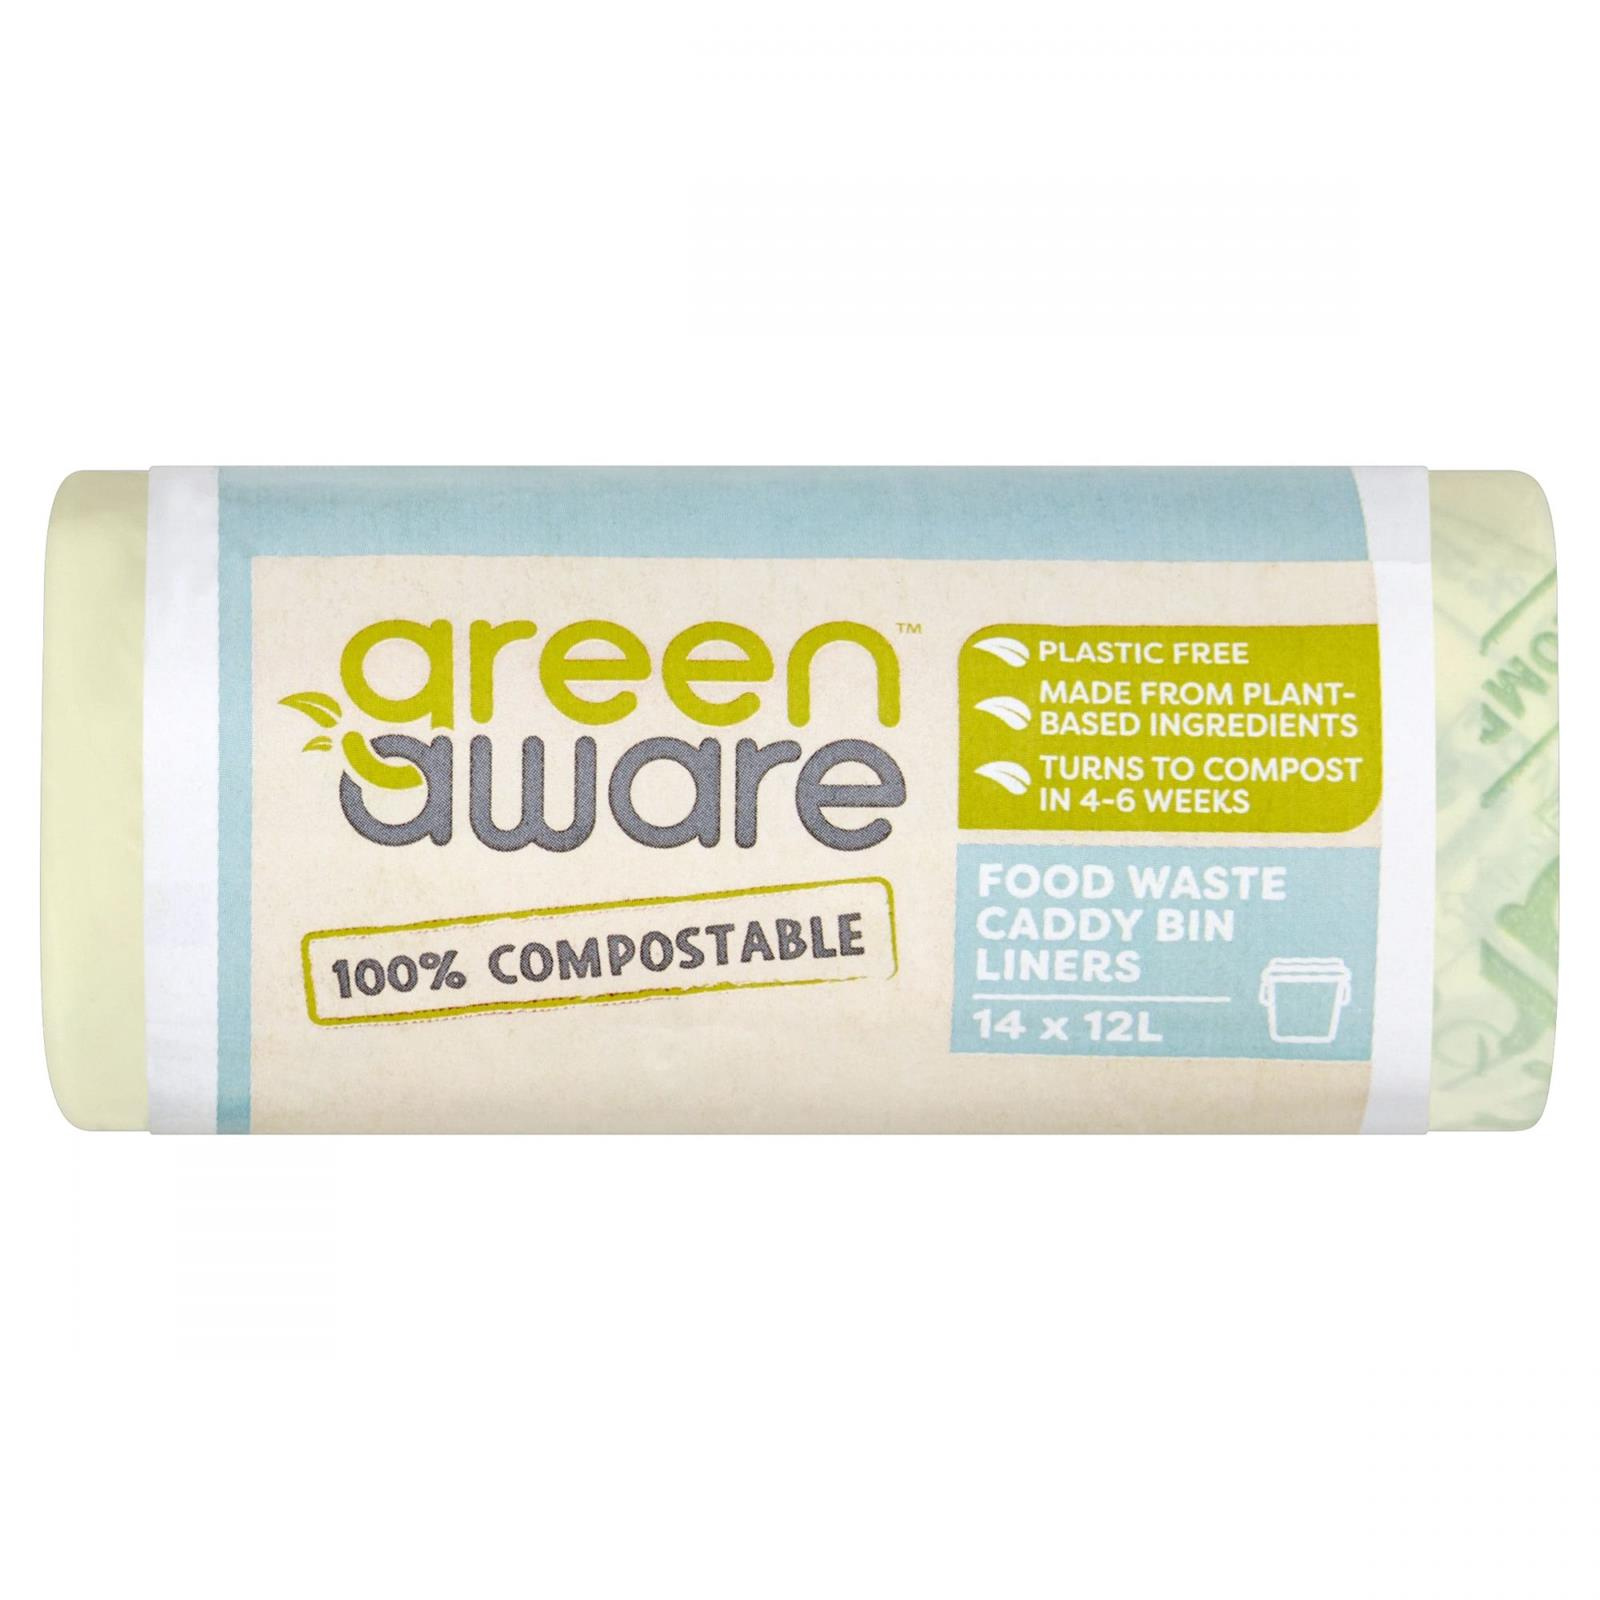 GreenAware − Kompostowalne worki na odpady spożywcze,12L − 14 szt.